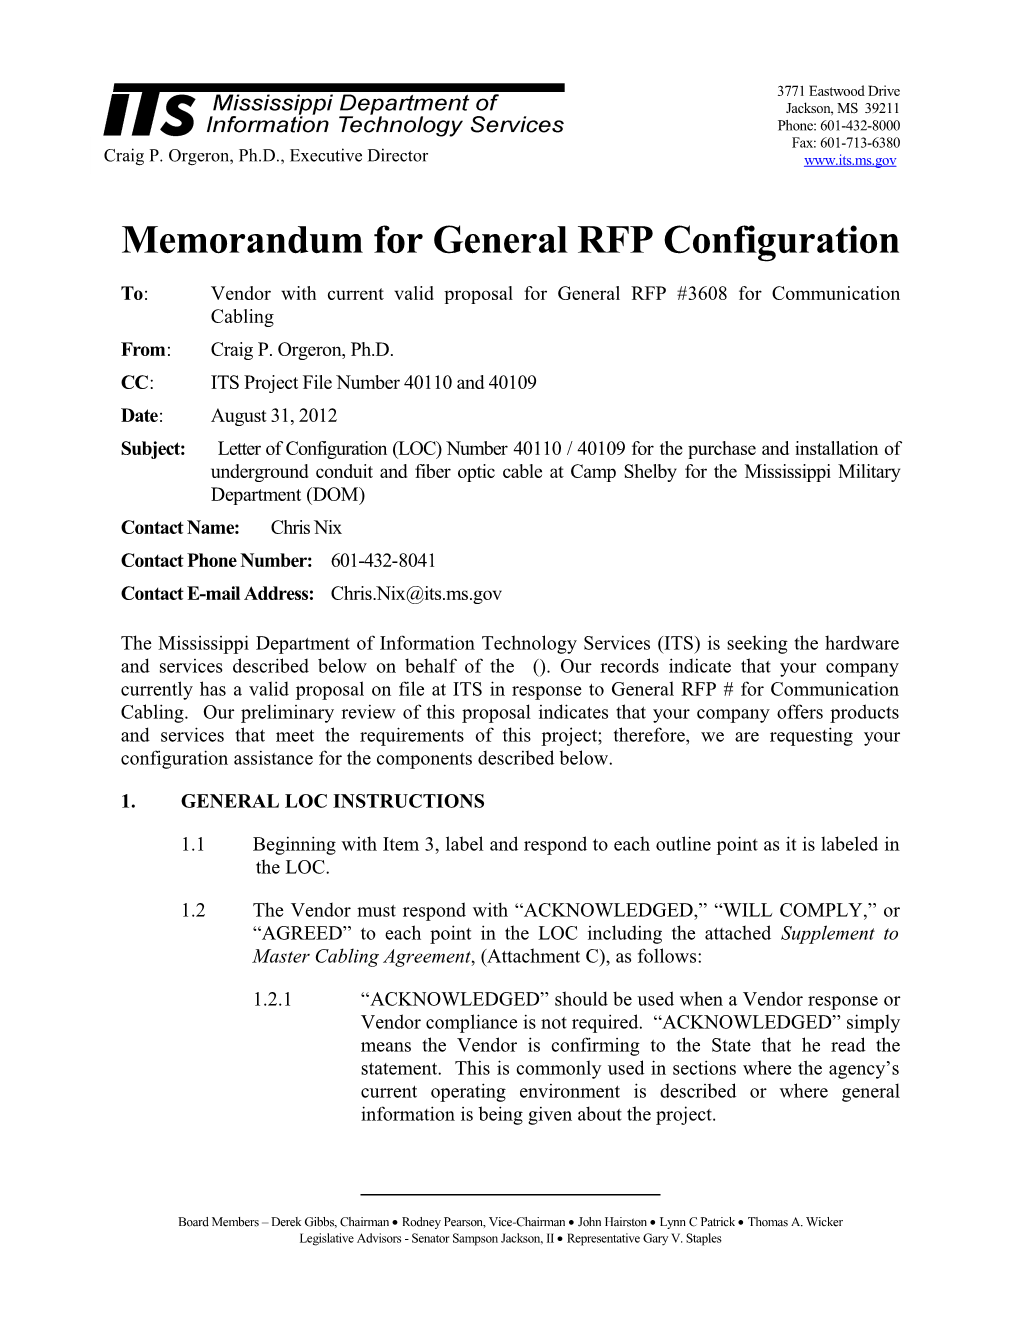 Memorandum for General RFP Configuration s7